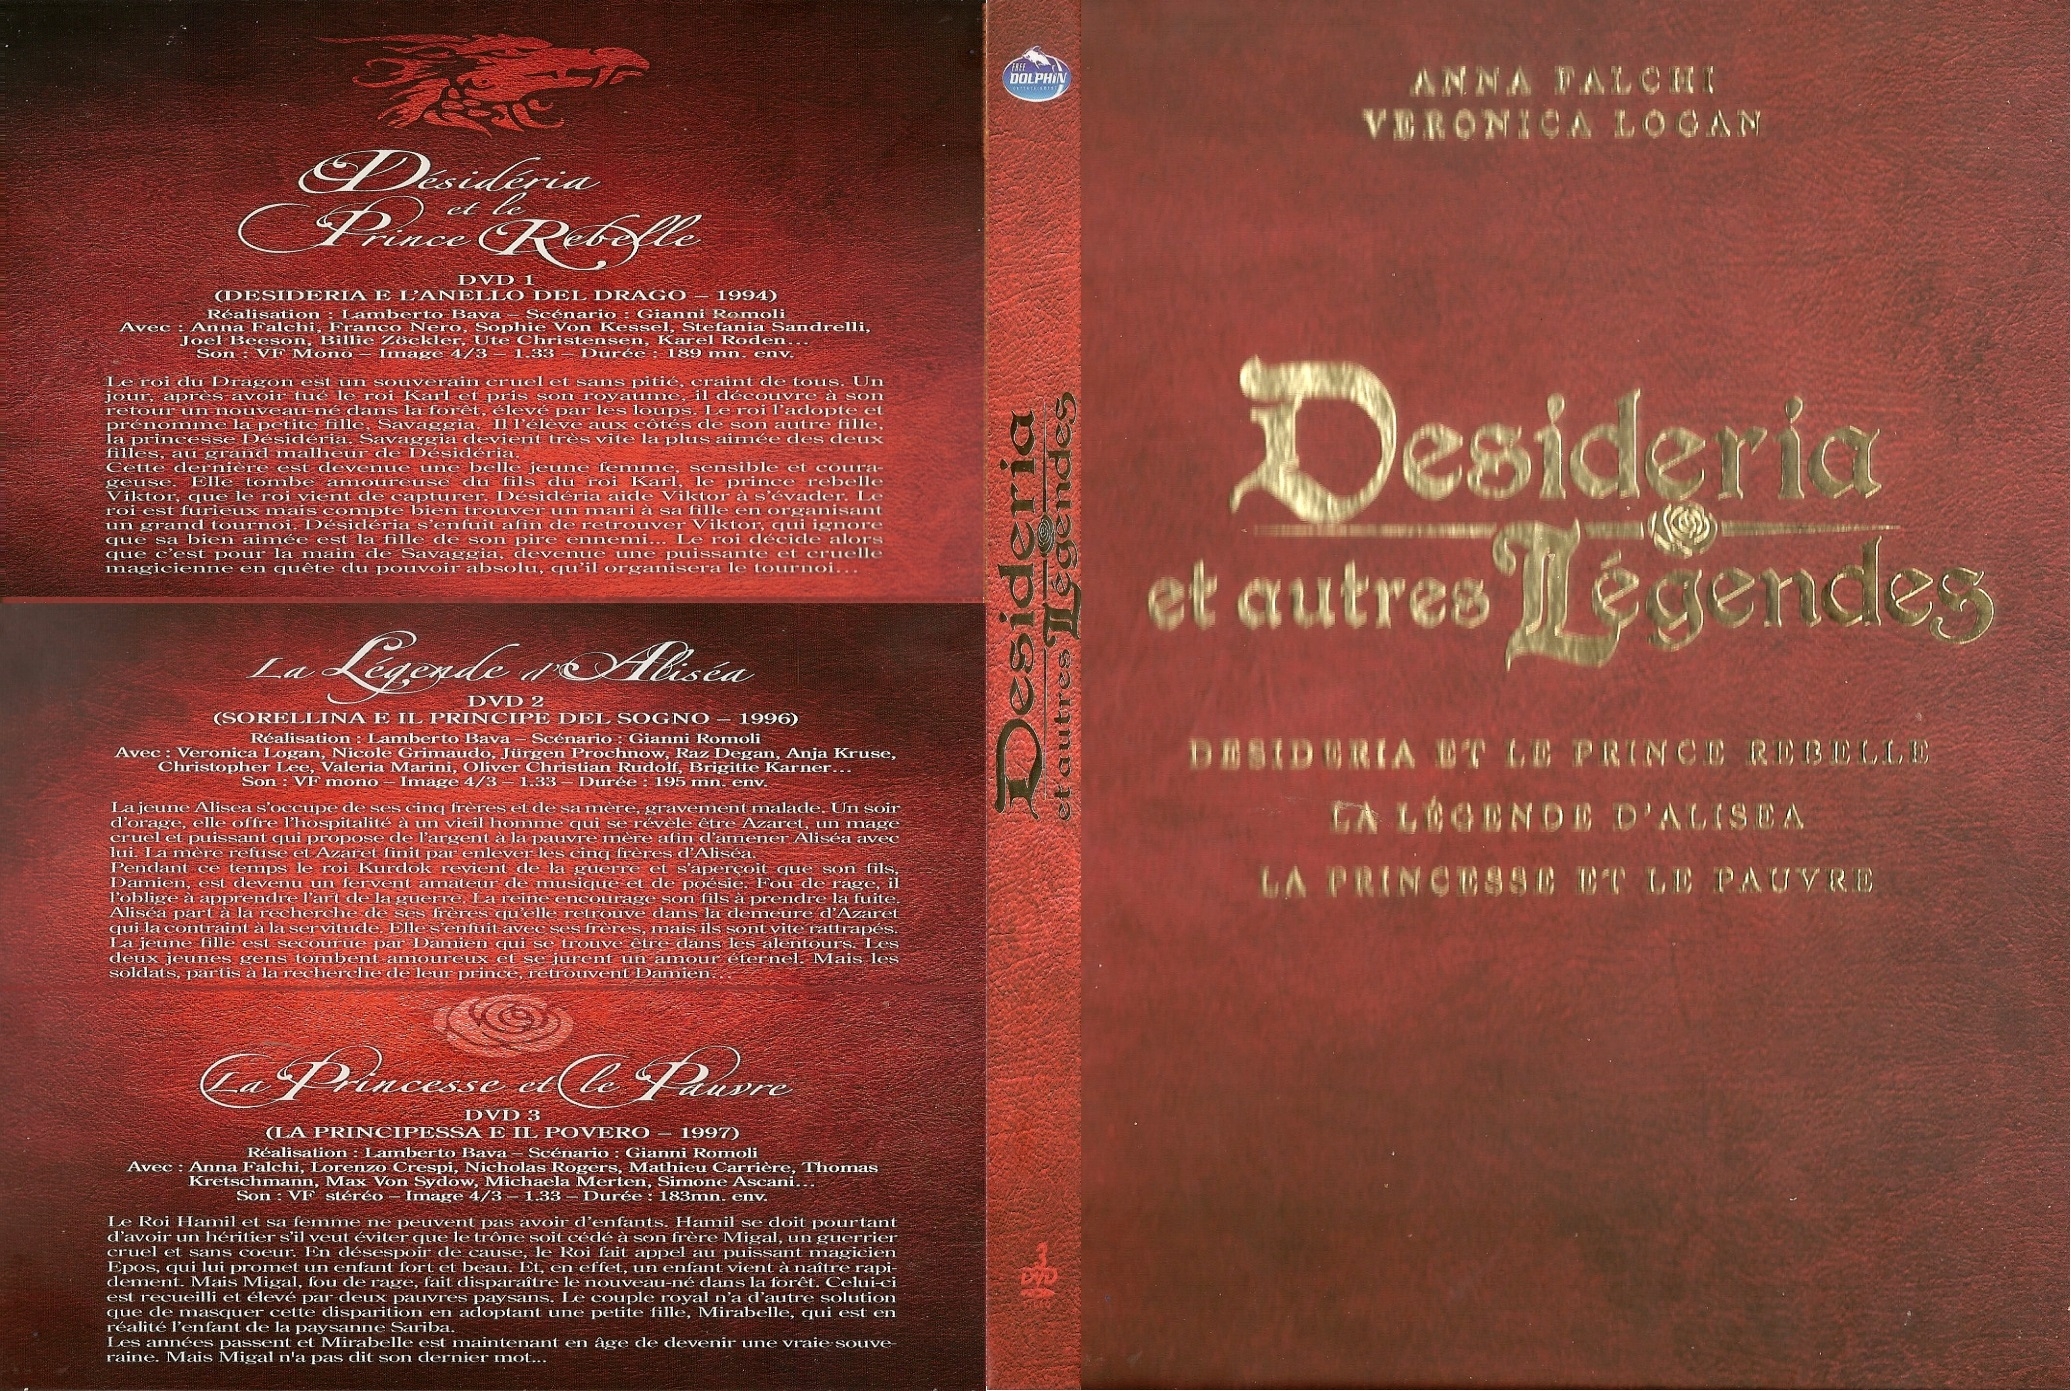 Jaquette DVD Desideria et autres lgendes